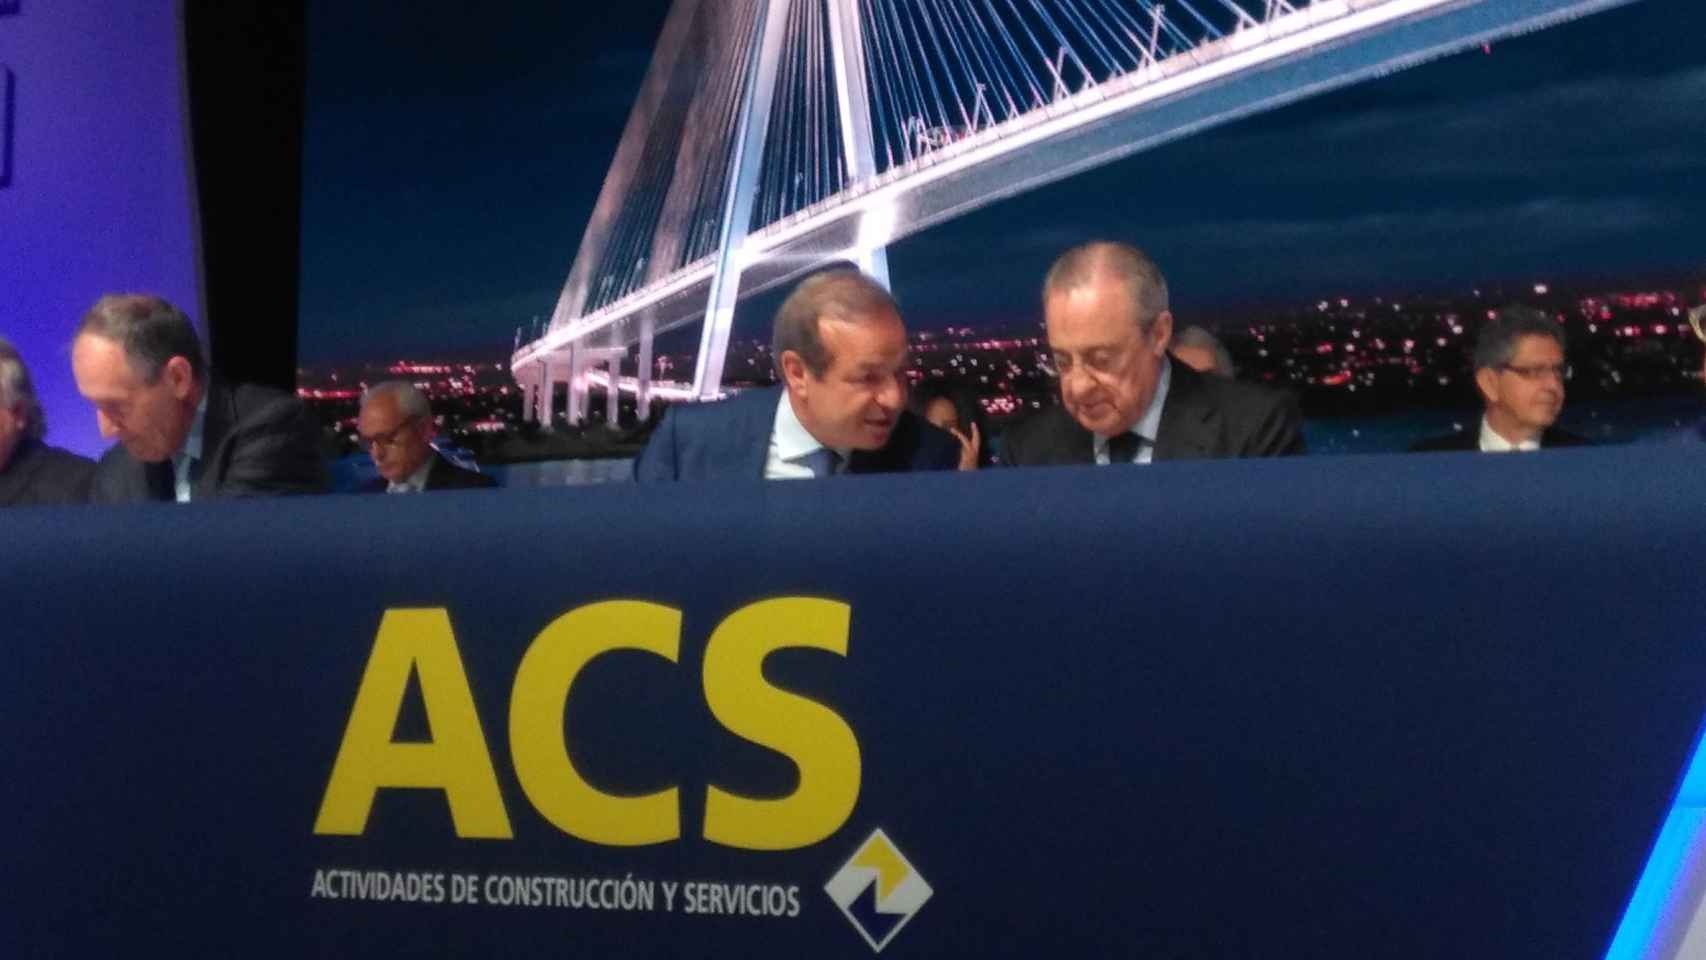 Florentino Pérez, presidente de ACS, y Marcelino Fernández Verdes, consejero delegado, en la junta de la compañía / EP